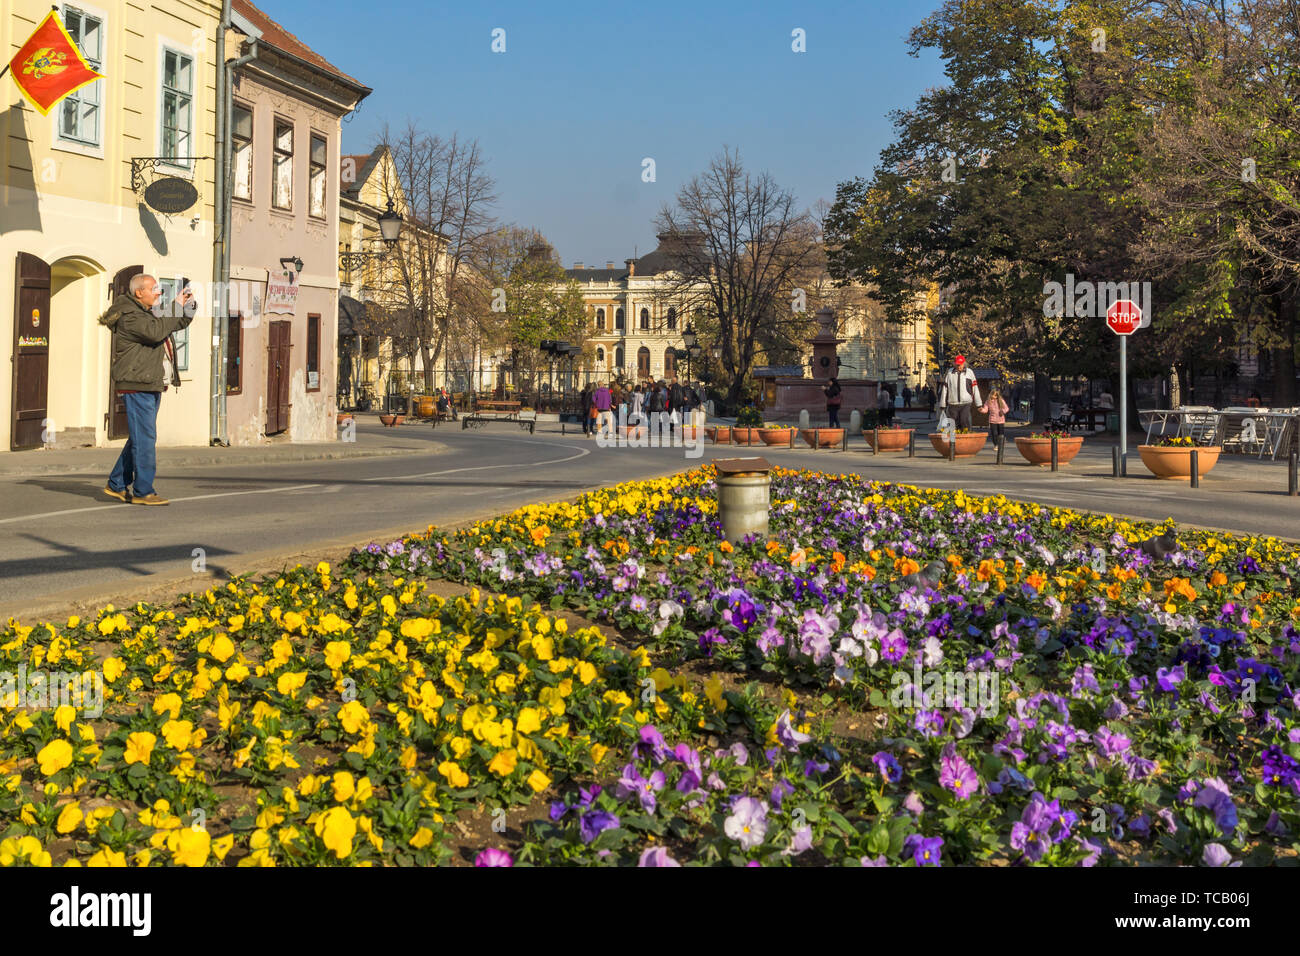 SREMSKI KARLOVCI, VOJVODINA, SERBIA - NOVEMBER 11, 2018: Panoramic view of center of town of Srijemski Karlovci, Vojvodina, Serbia Stock Photo